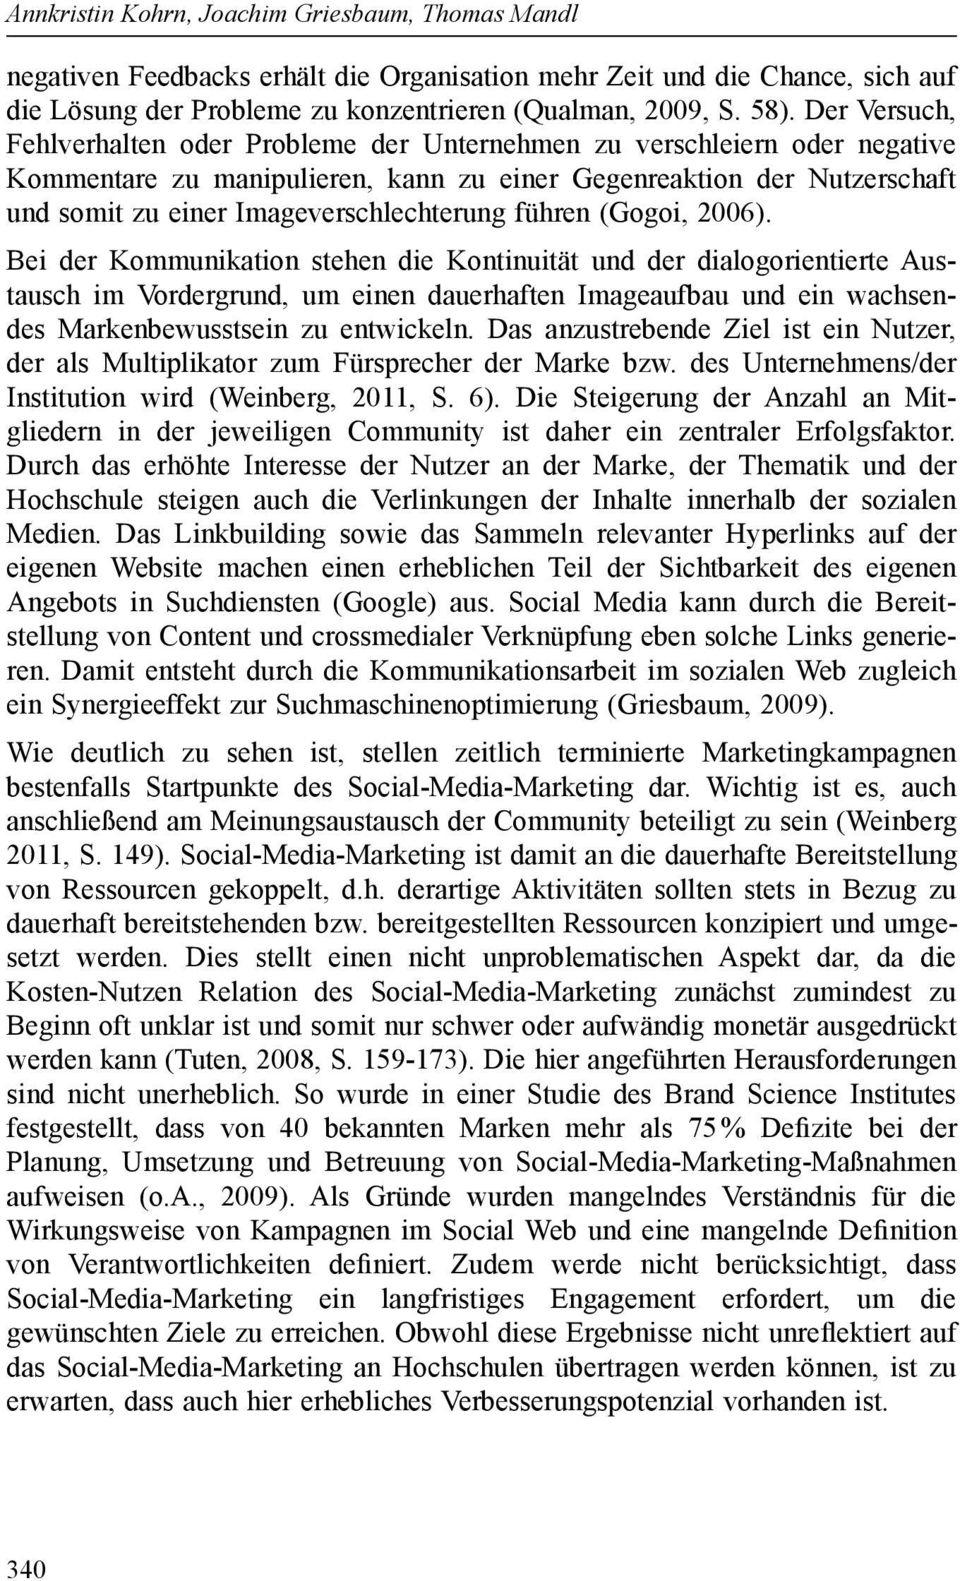 Imageverschlechterung führen (Gogoi, 2006).